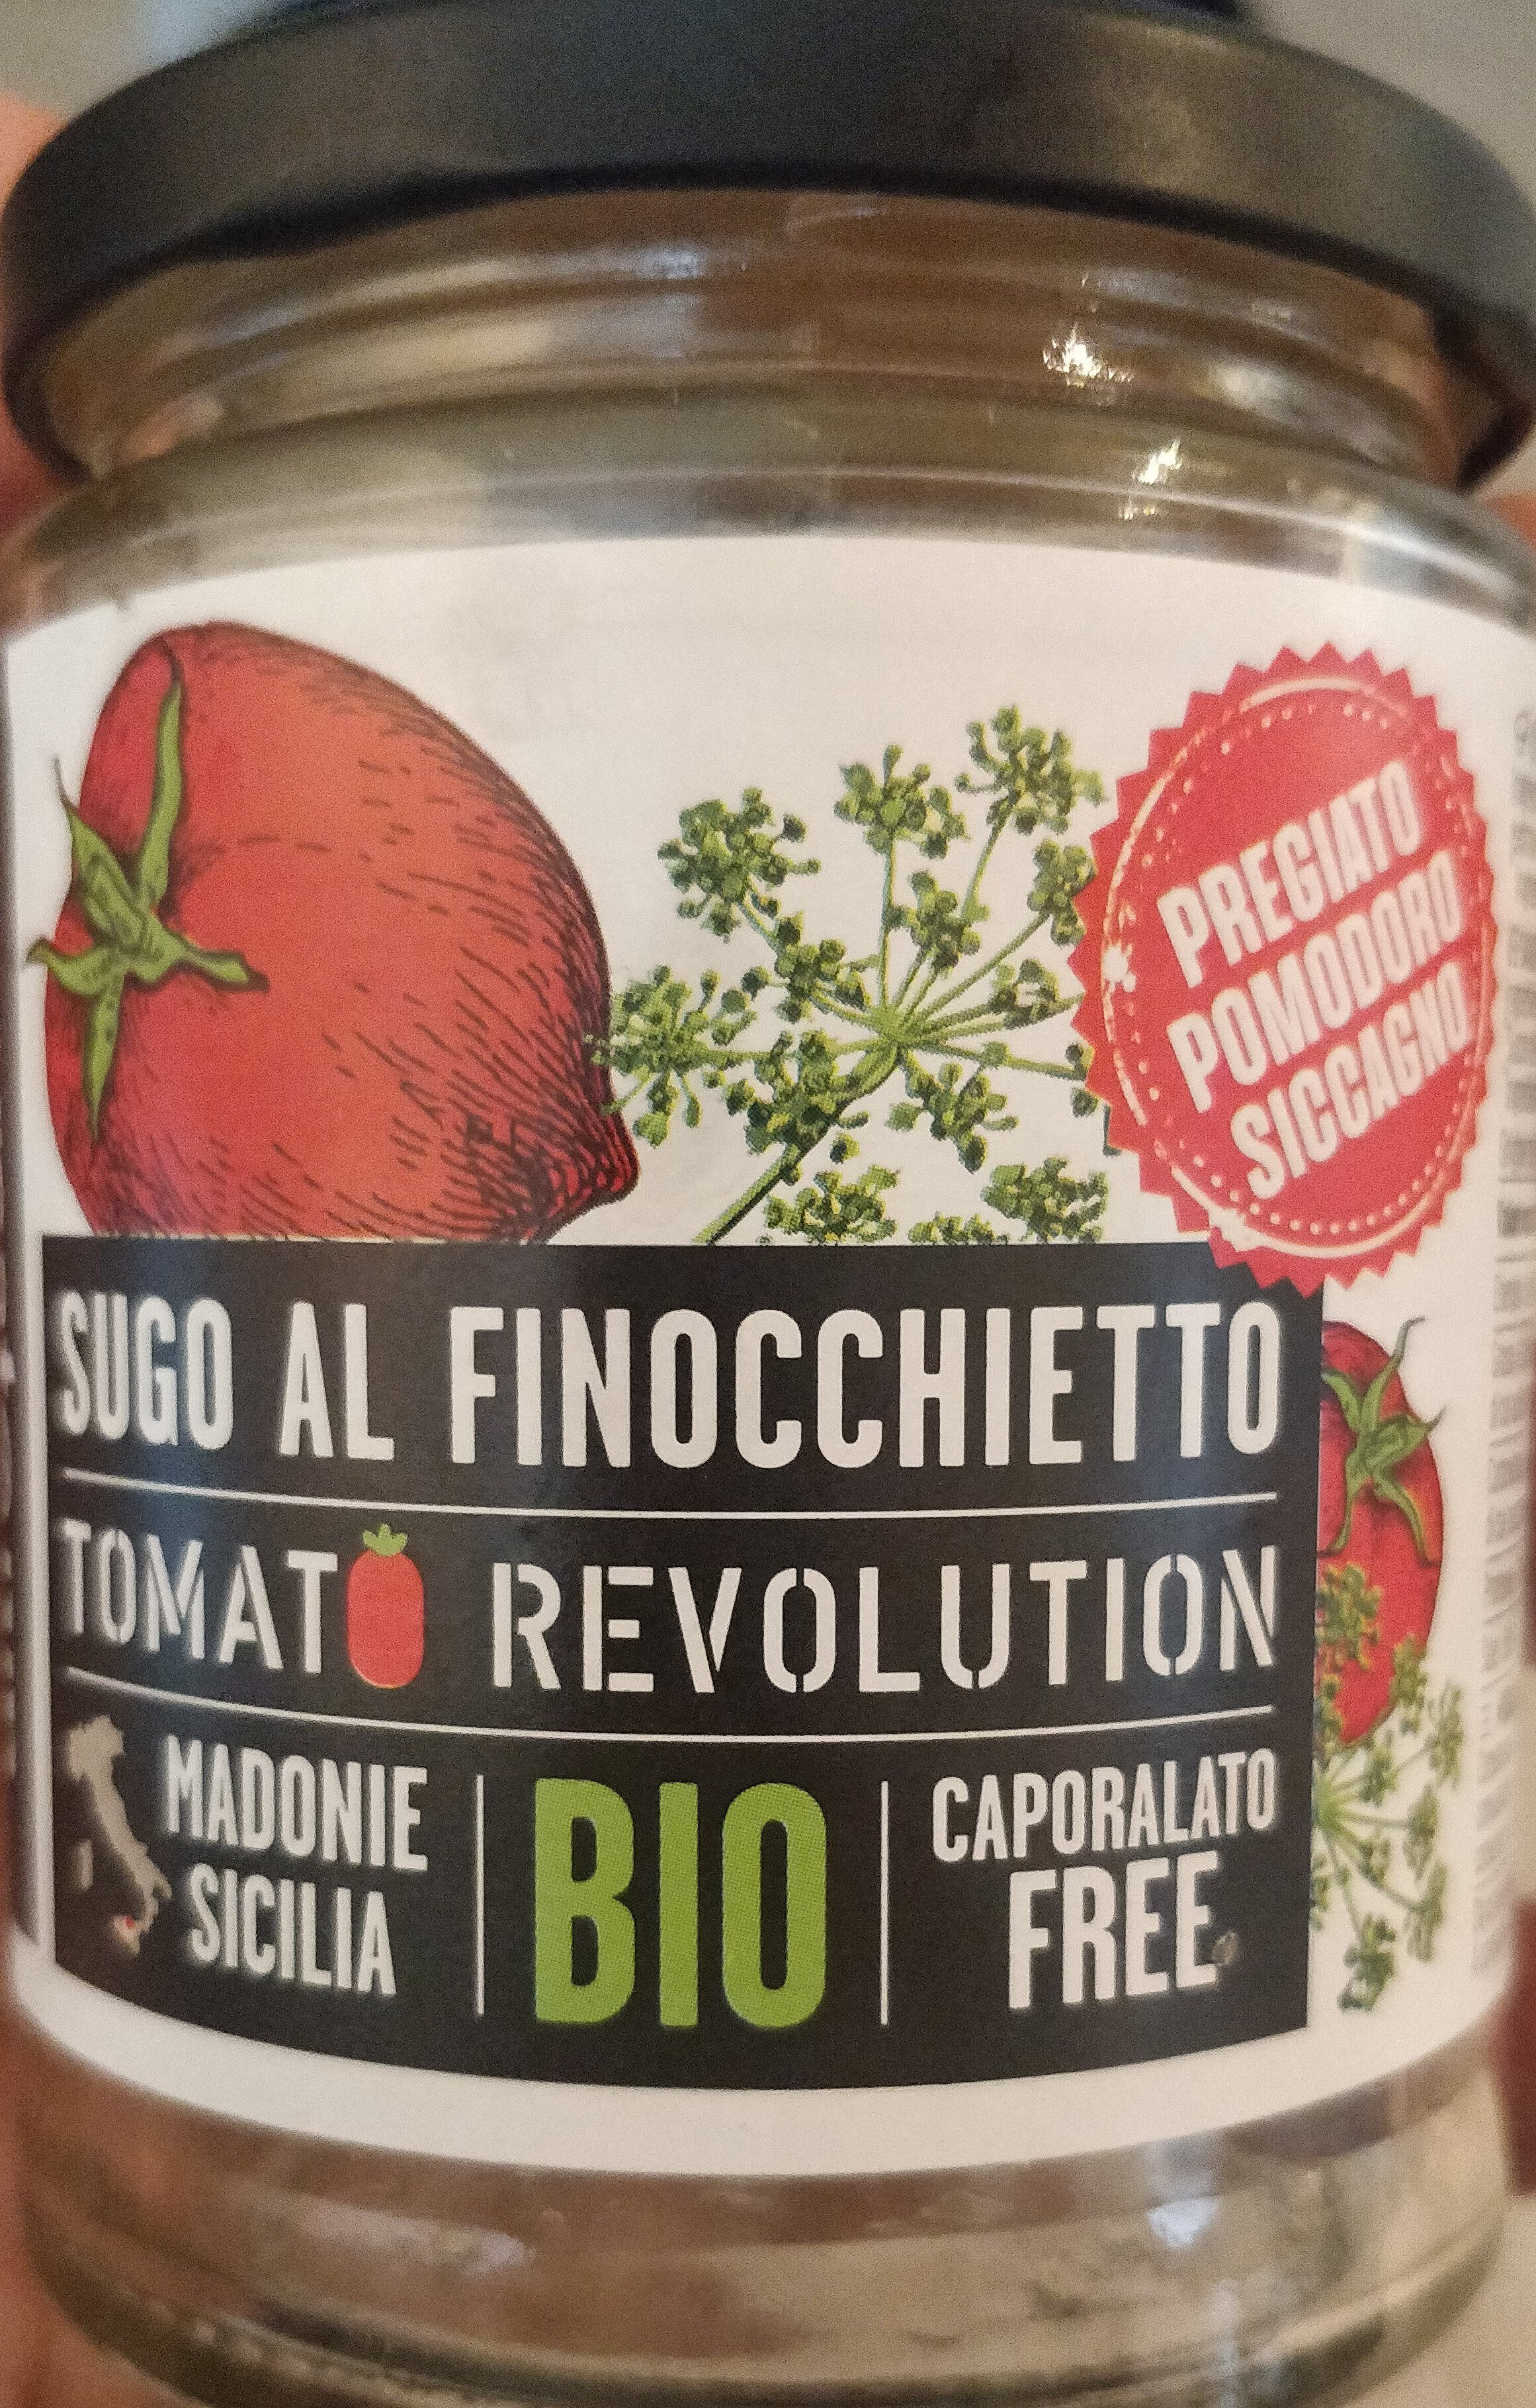 Tomato revolution - sugo al finocchietto - Product - it